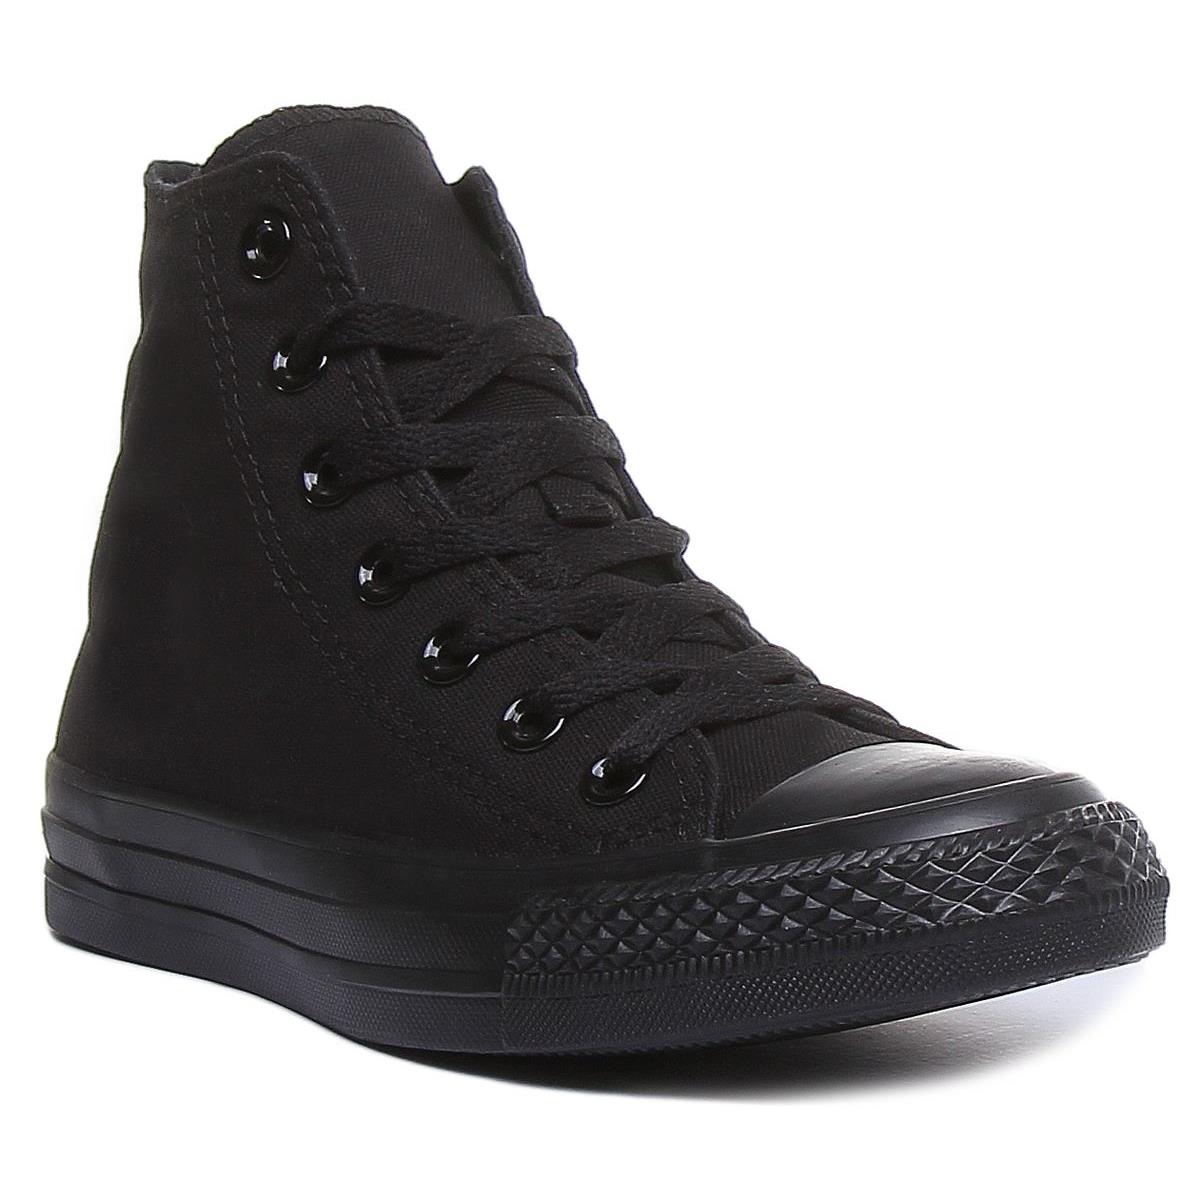 Converse M3310Ct As Hi Top Sneaker Black Mono Lace Up Unisex Size US 5 - 13 Black